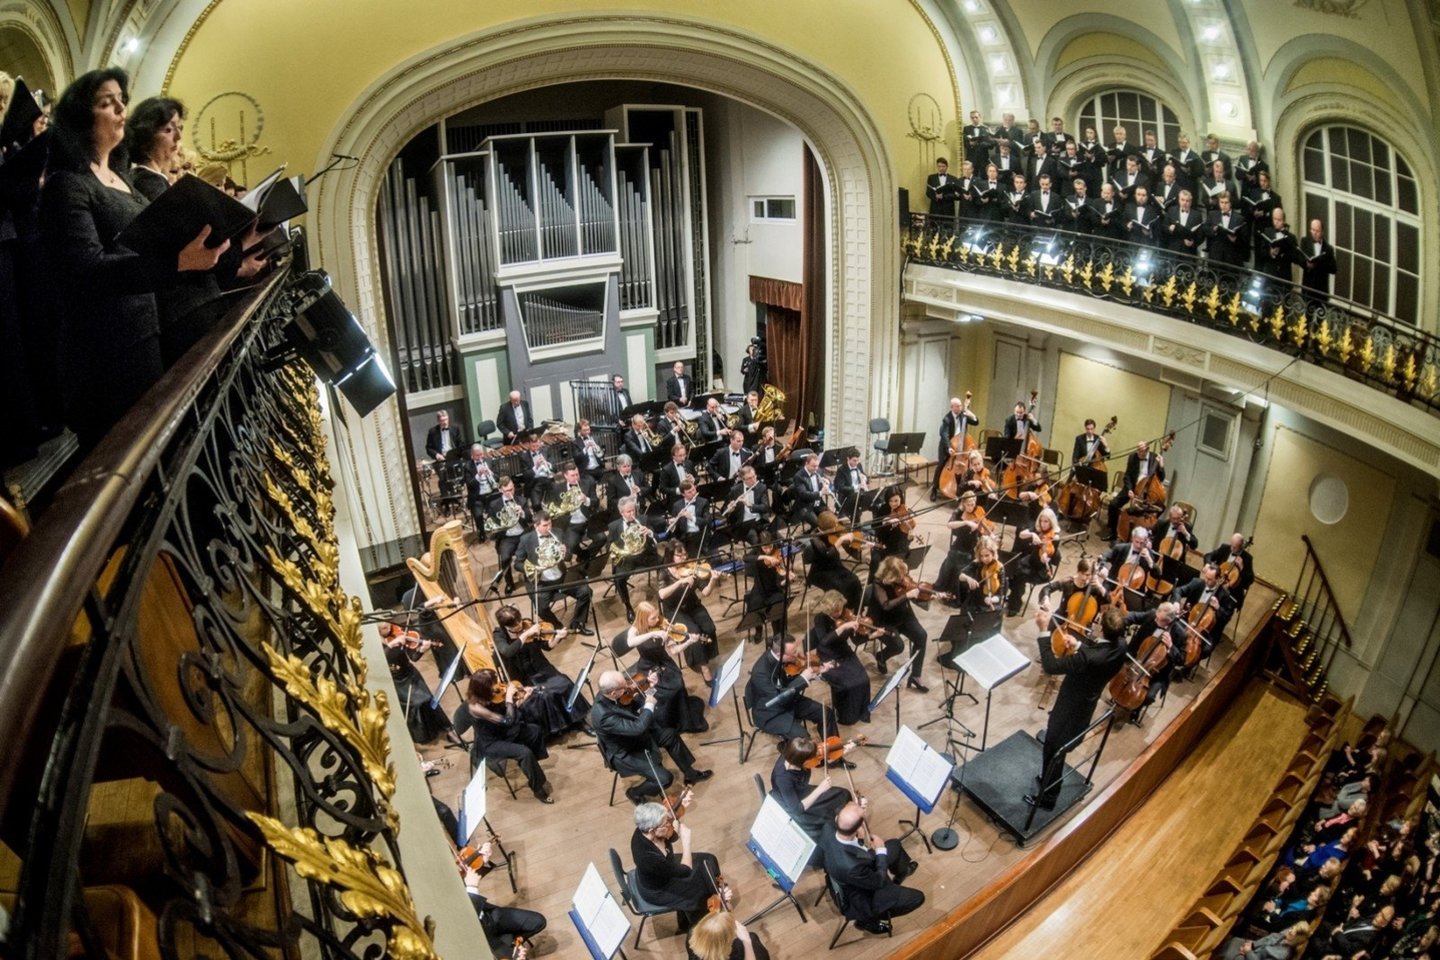  Lietuvos nacionalinė filharmonija Vilniuje - viena pagrindinių klasikinės muzikos festivalių scenų.<br> D.Matvejevo nuotr.